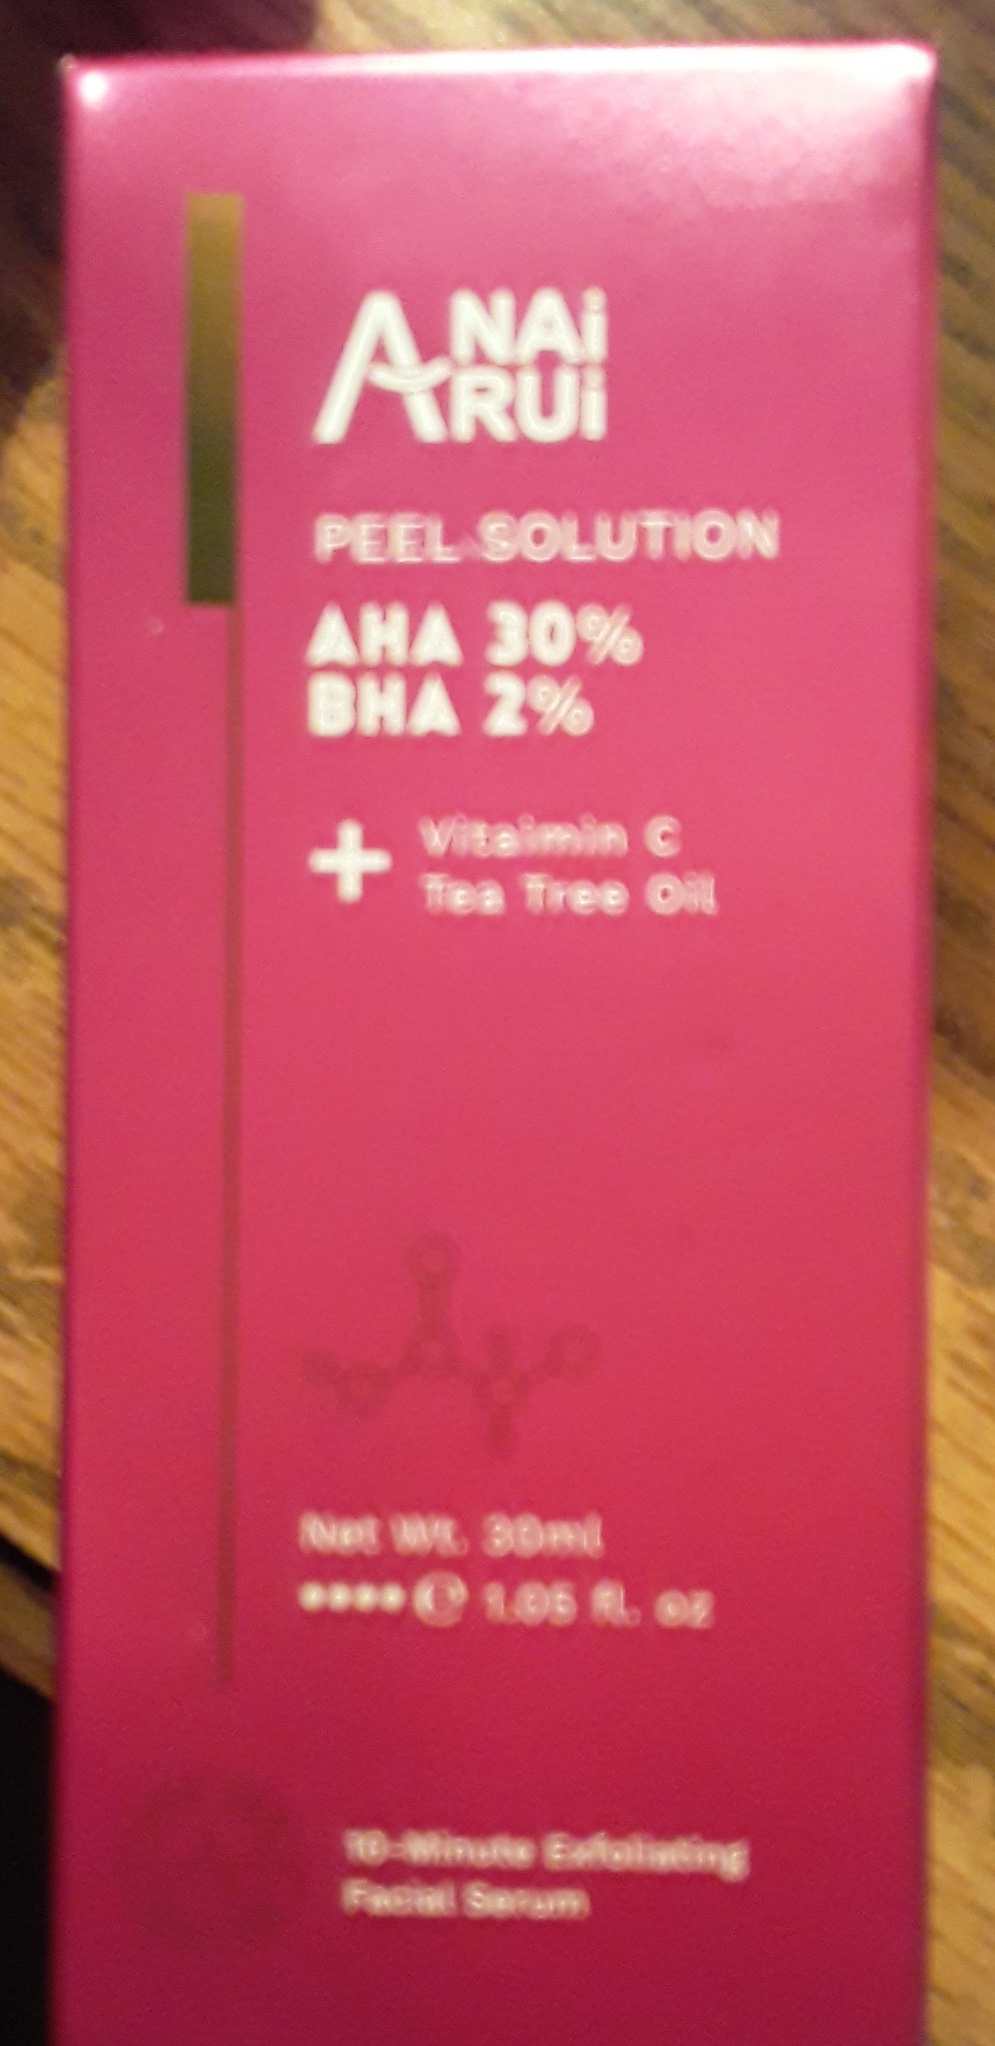 Anai Rui Peel Solution AHA30% BHA2%